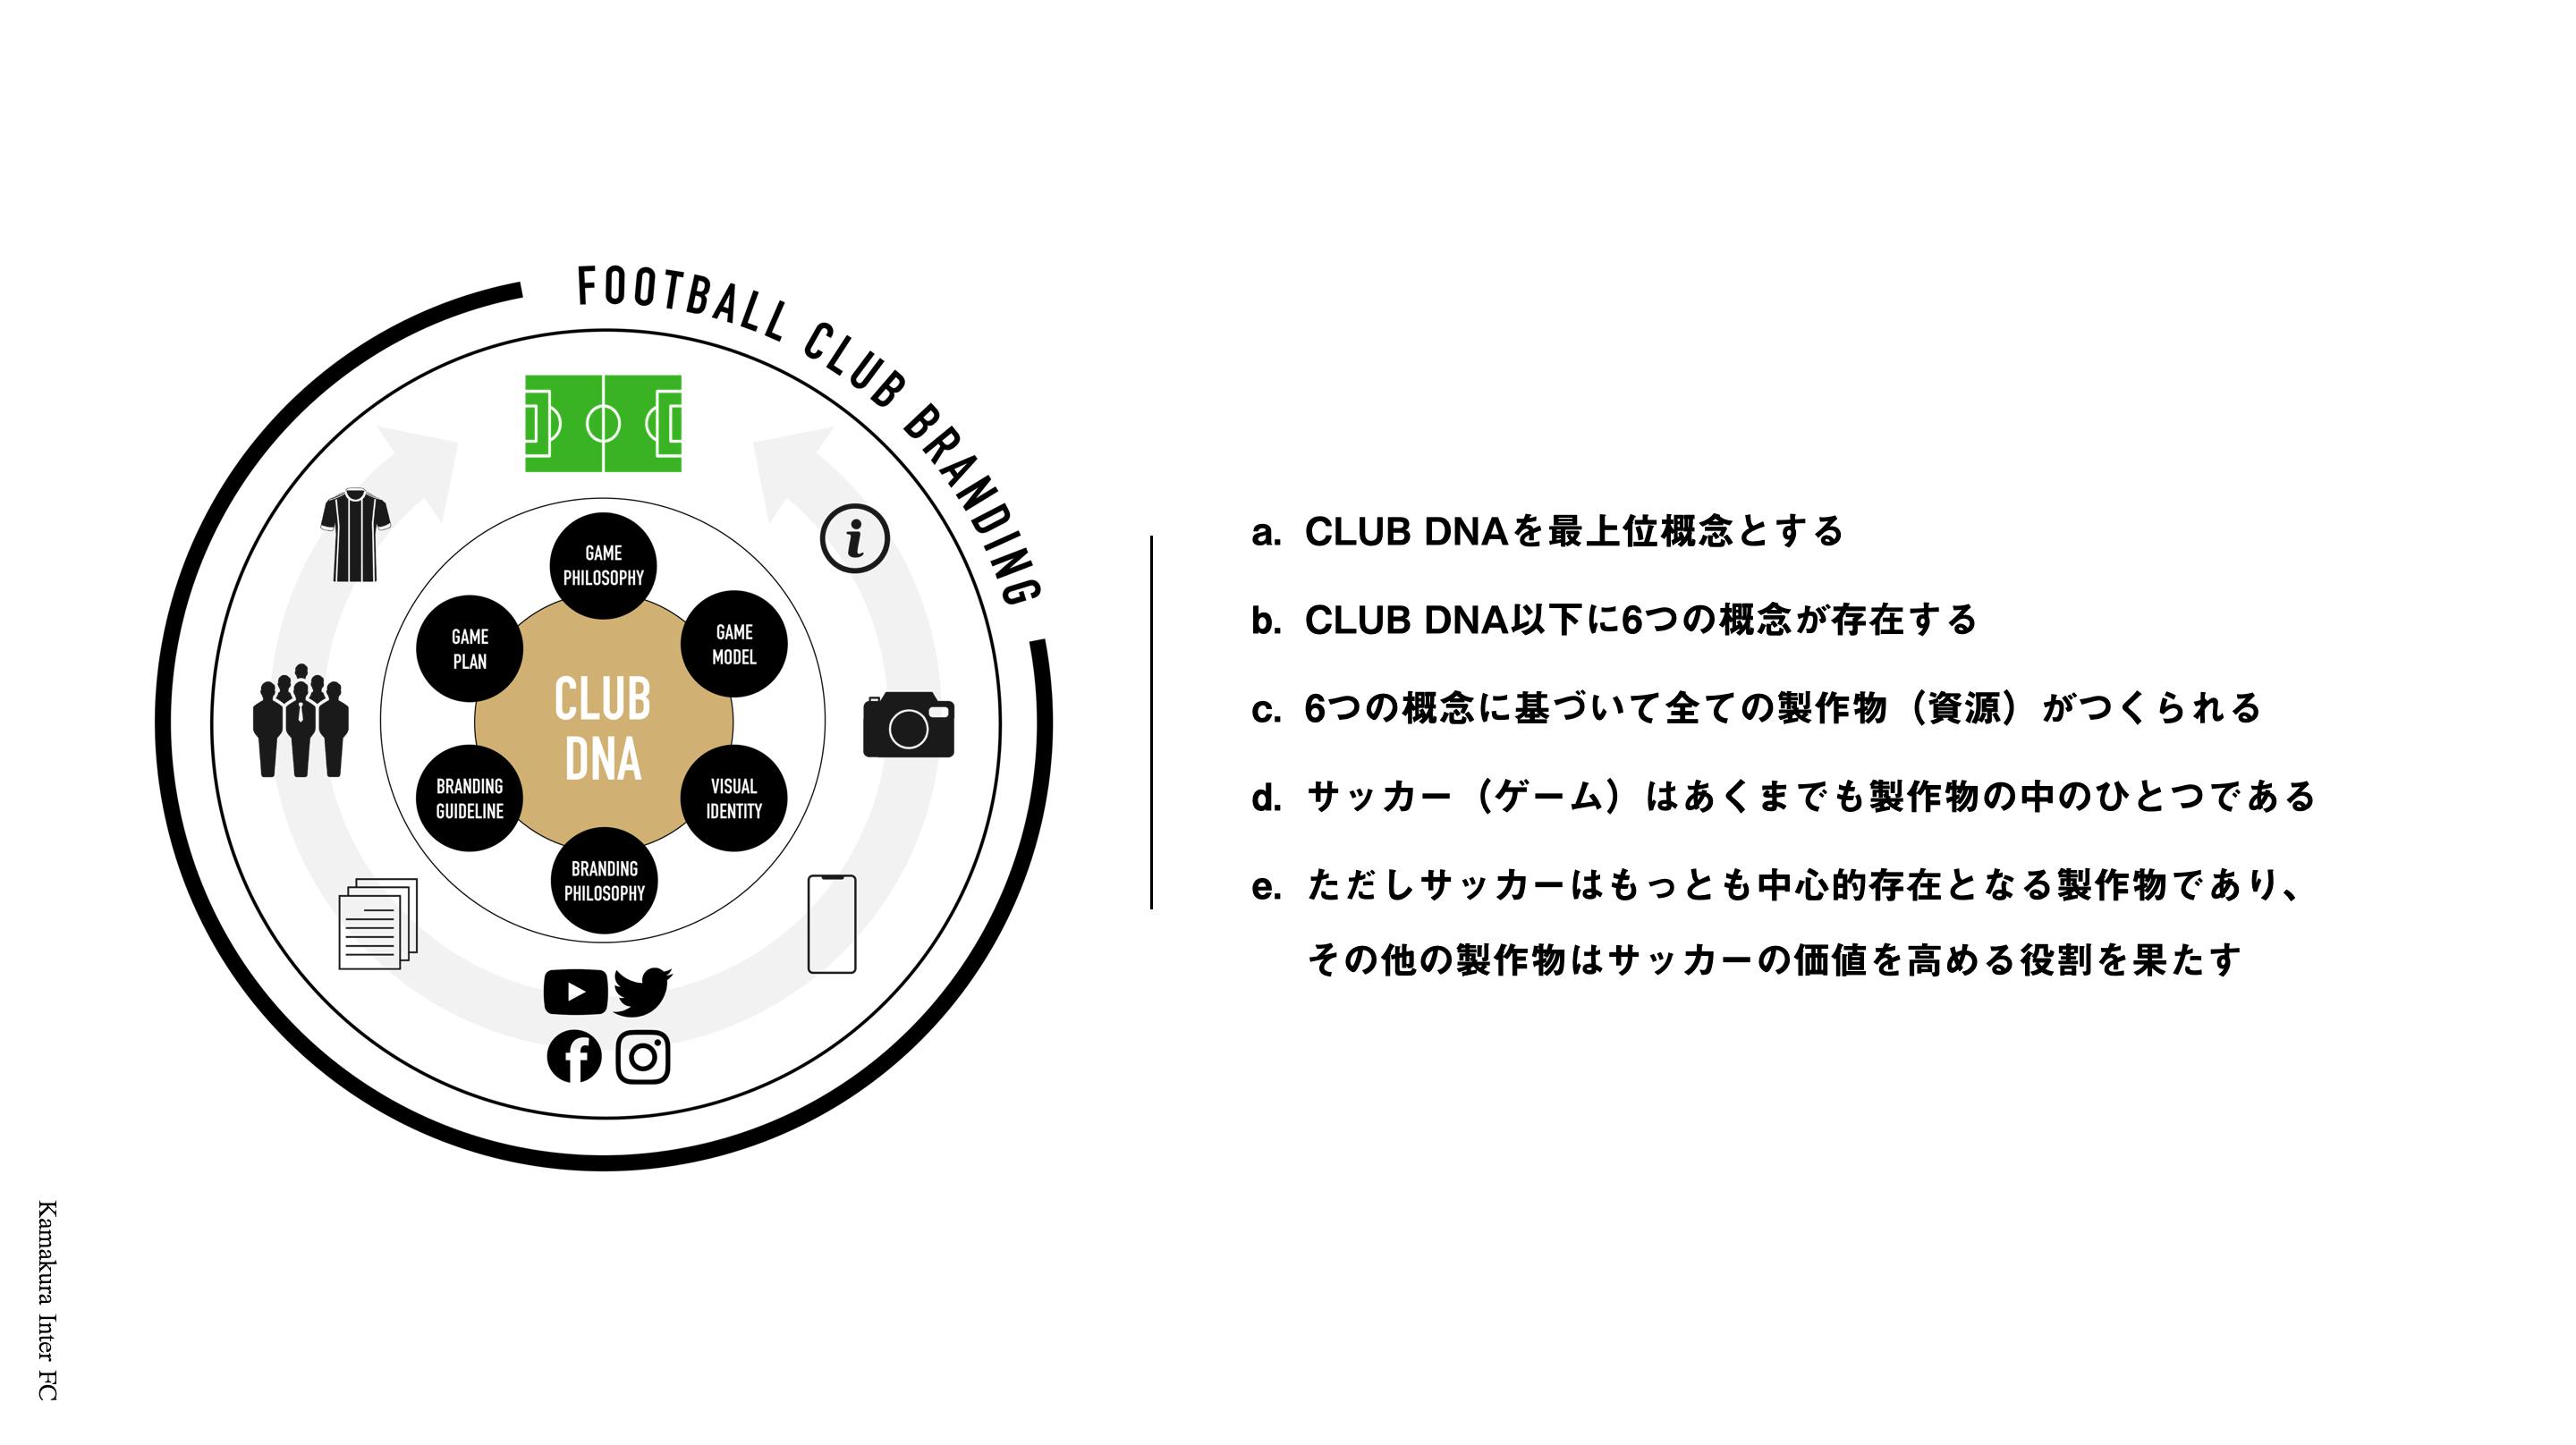 鎌倉 世界のスポーツシーンを牽引する クール なサッカークラブの誕生 Campfire キャンプファイヤー